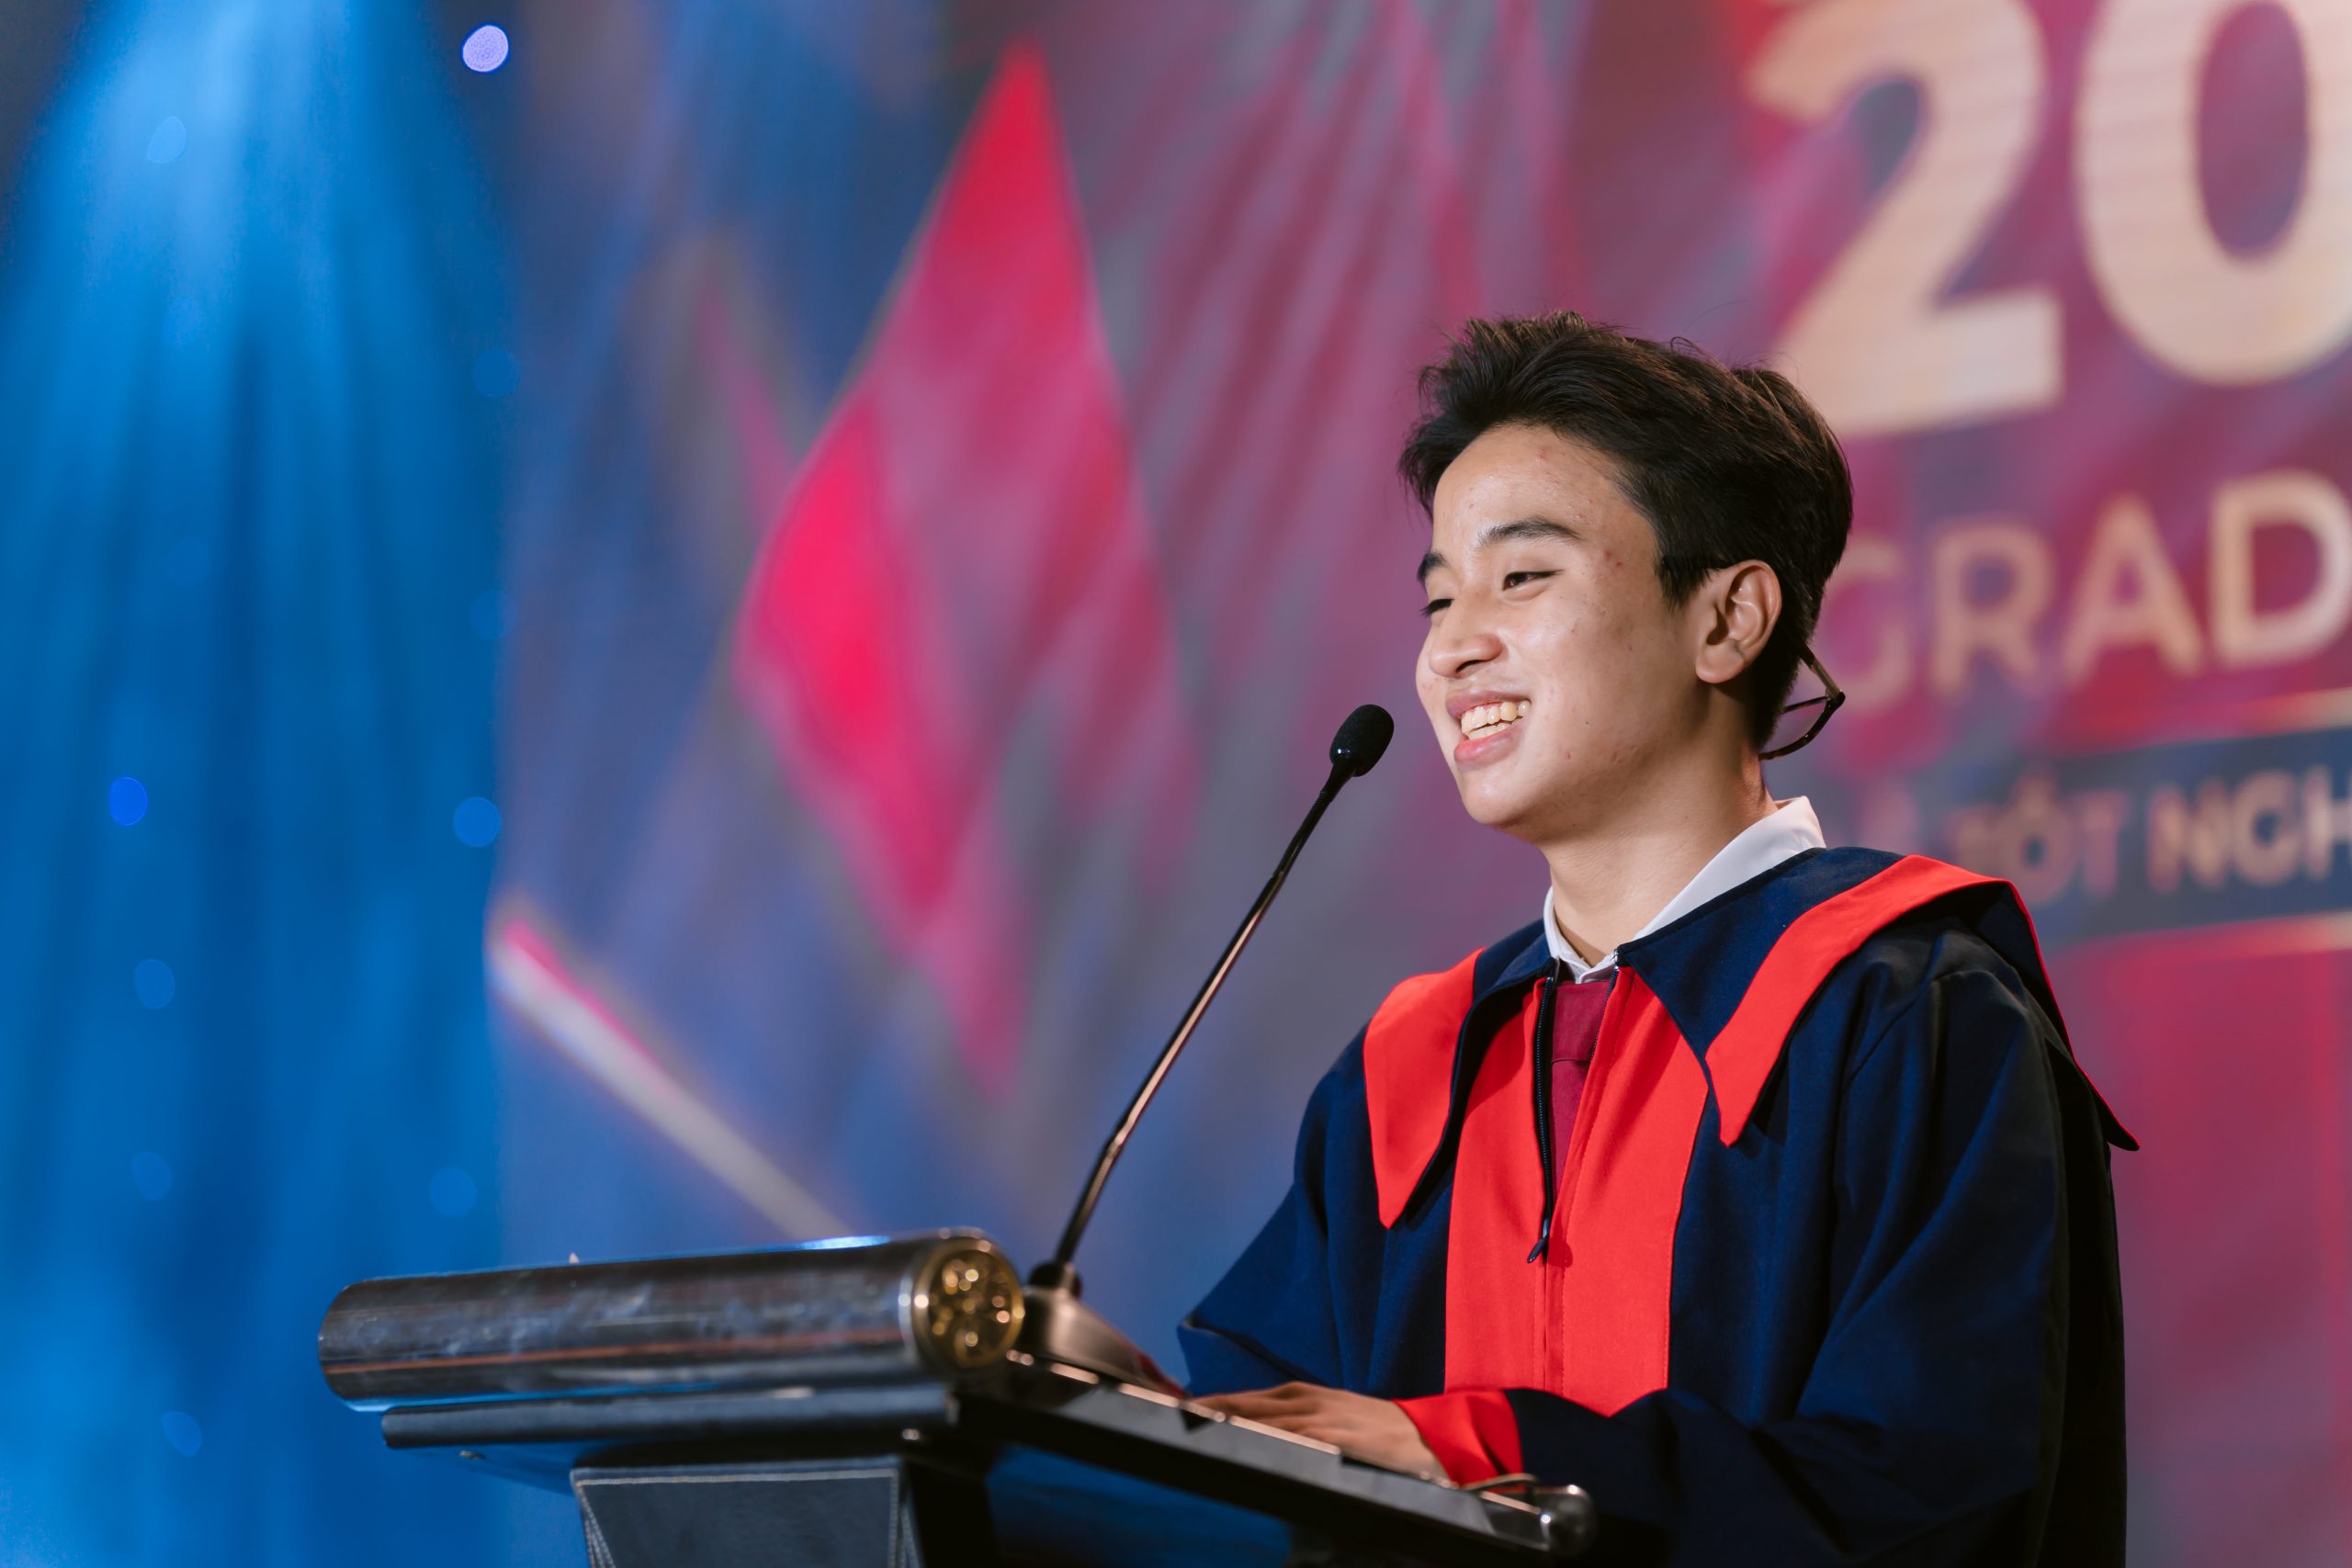 Vinser Võ Nam Khánh đạt học bổng 5,5 tỷ VNĐ của TETR College of Business – Trải nghiệm học tập tại 7 Quốc gia trong 4 năm Đại học